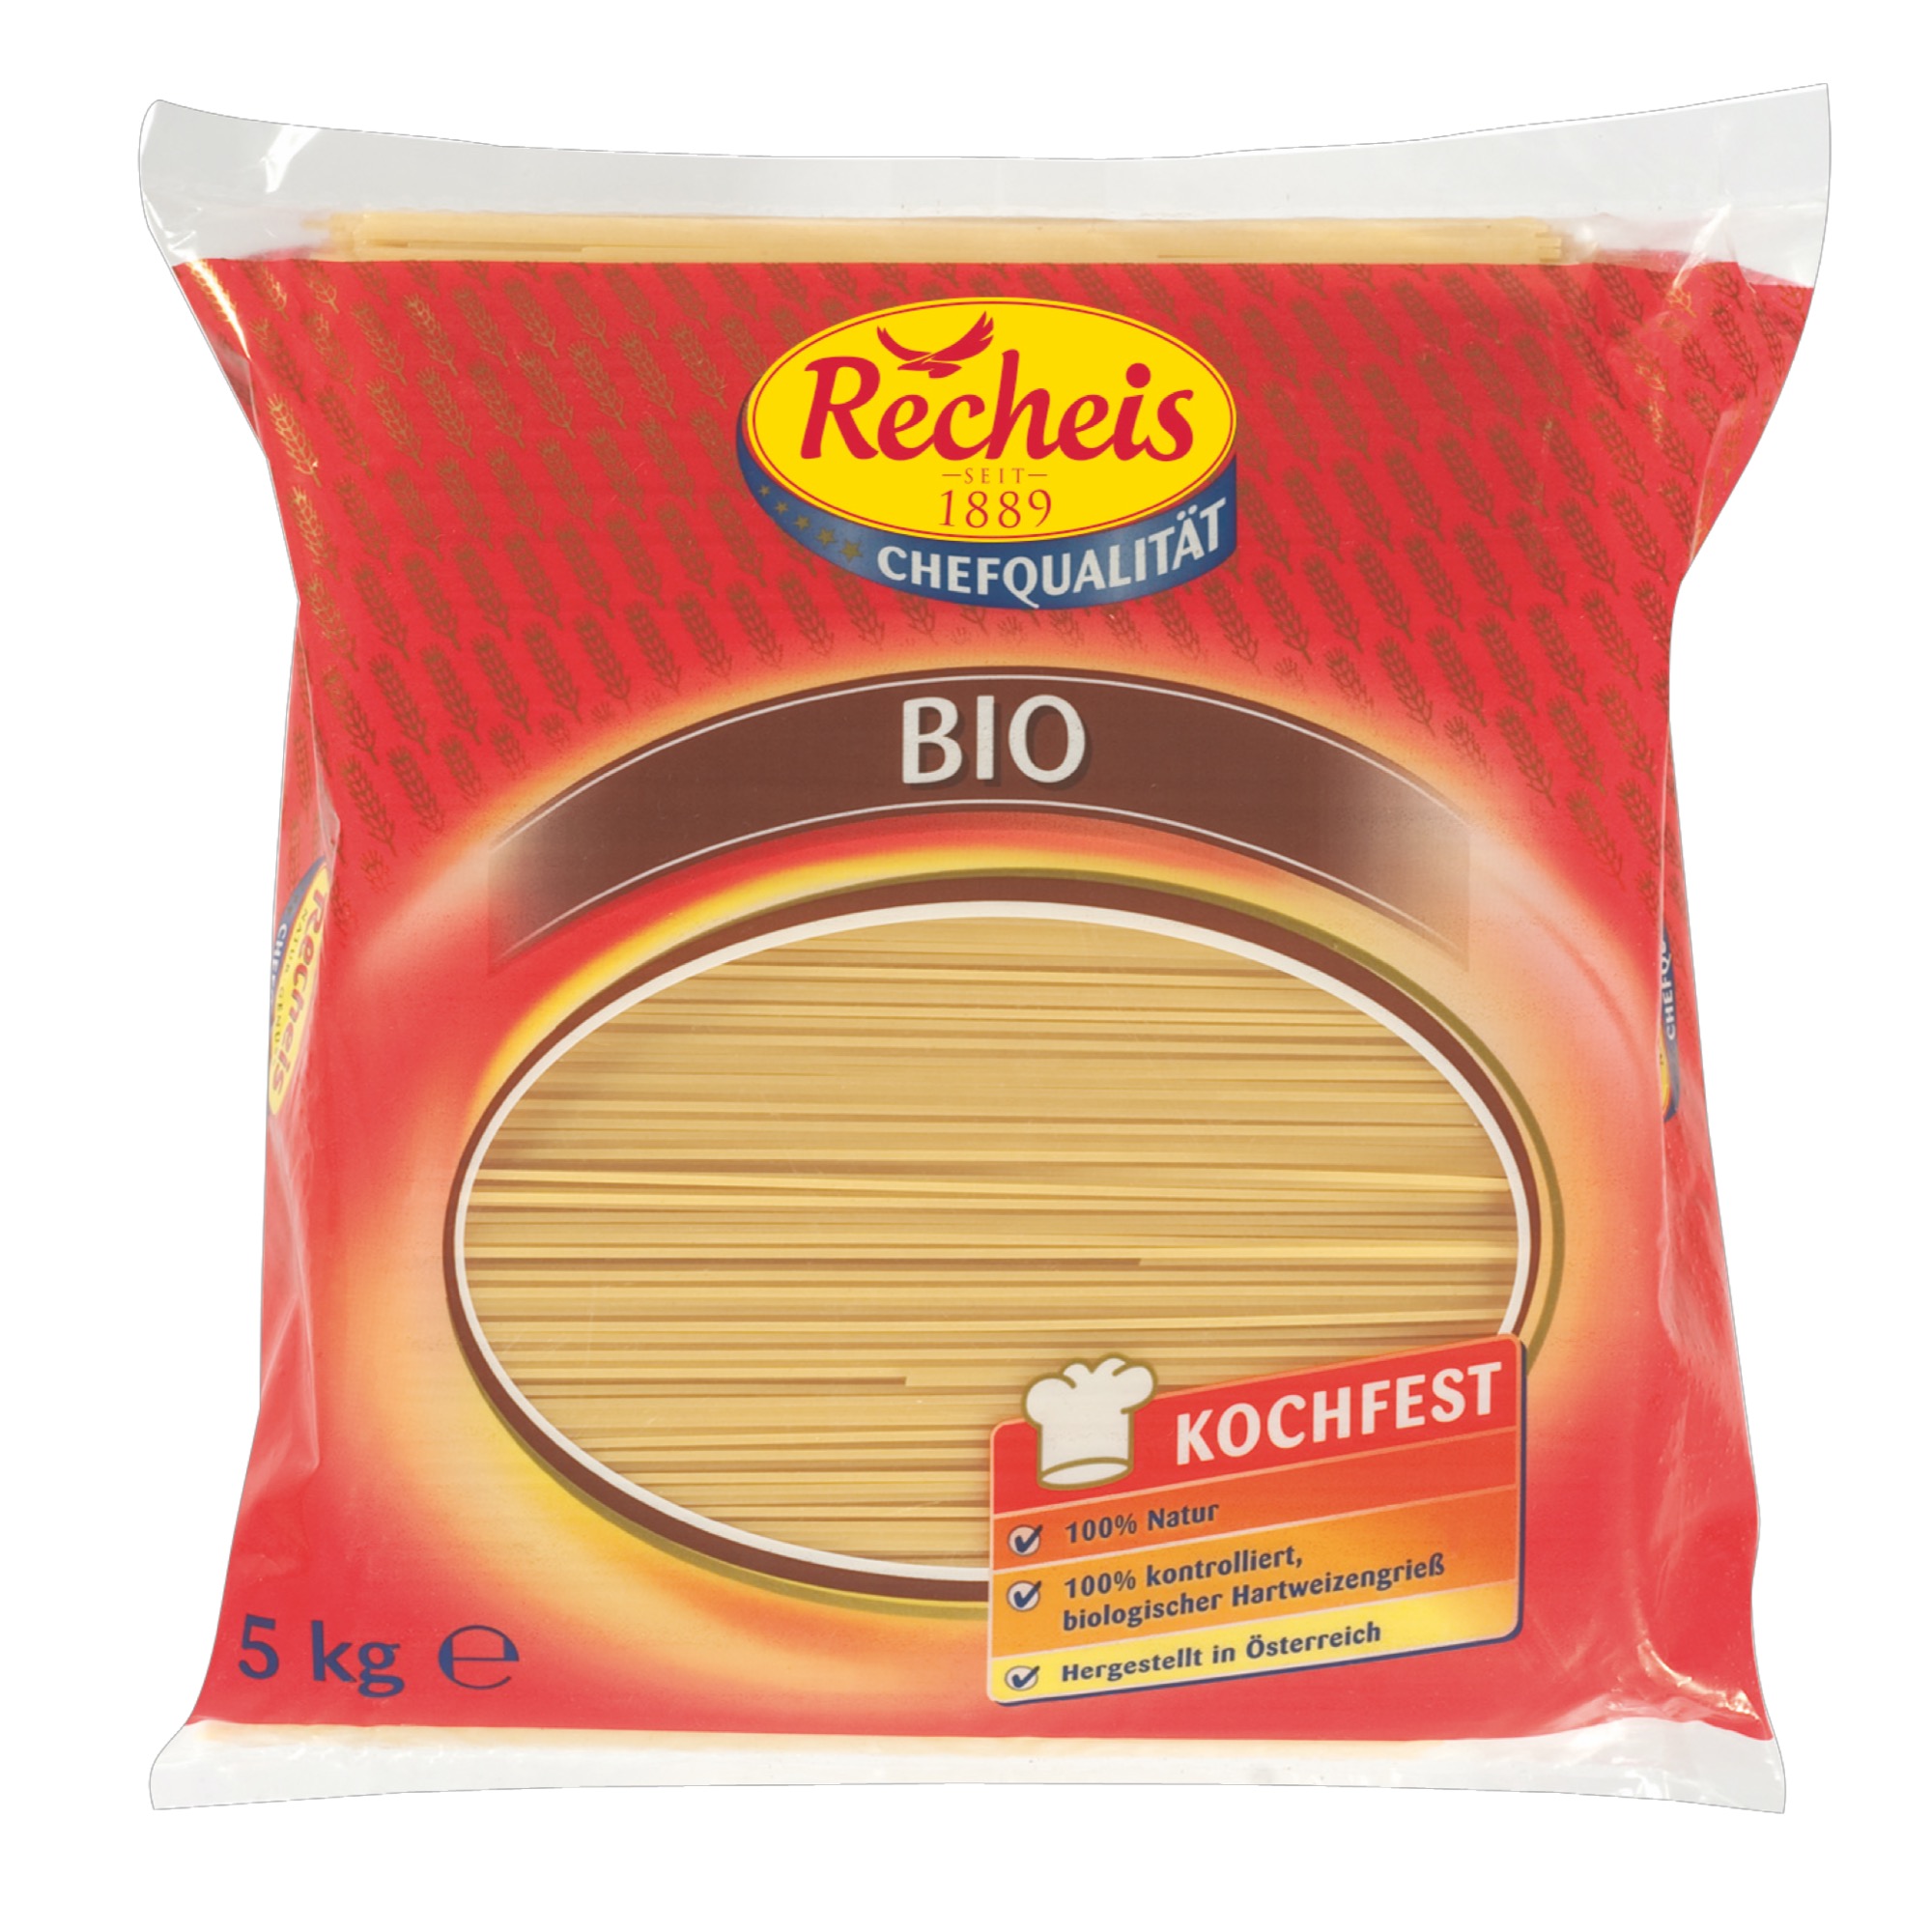 Recheis Bio cestoviny 5kg špagety